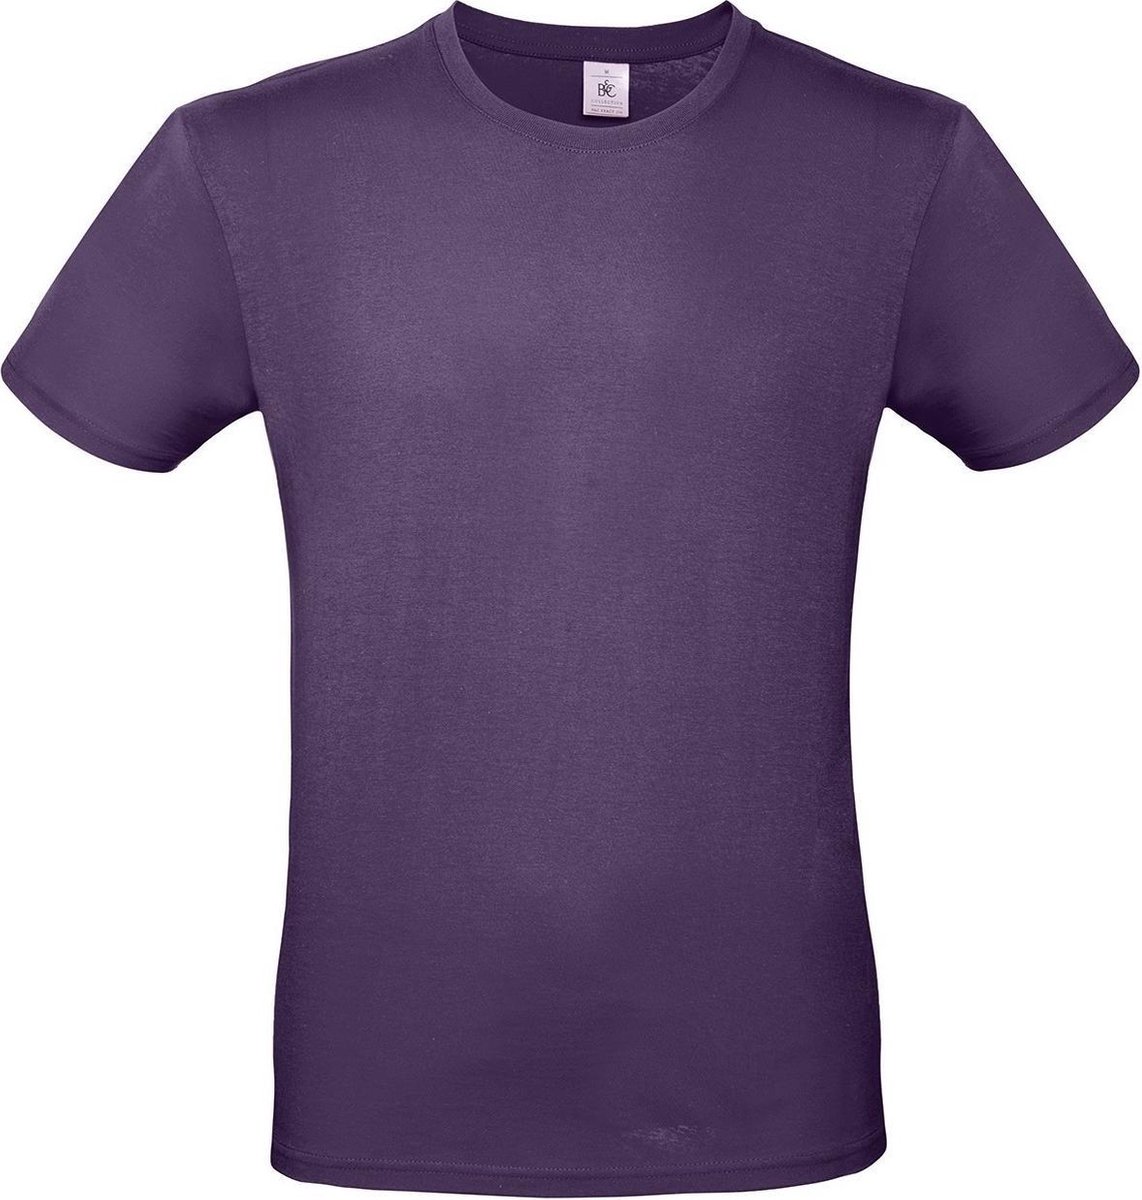 Set van 2x stuks paars basic t-shirt met ronde hals voor heren - katoen - 145 grams - paarse shirts / kleding, maat: L (52)